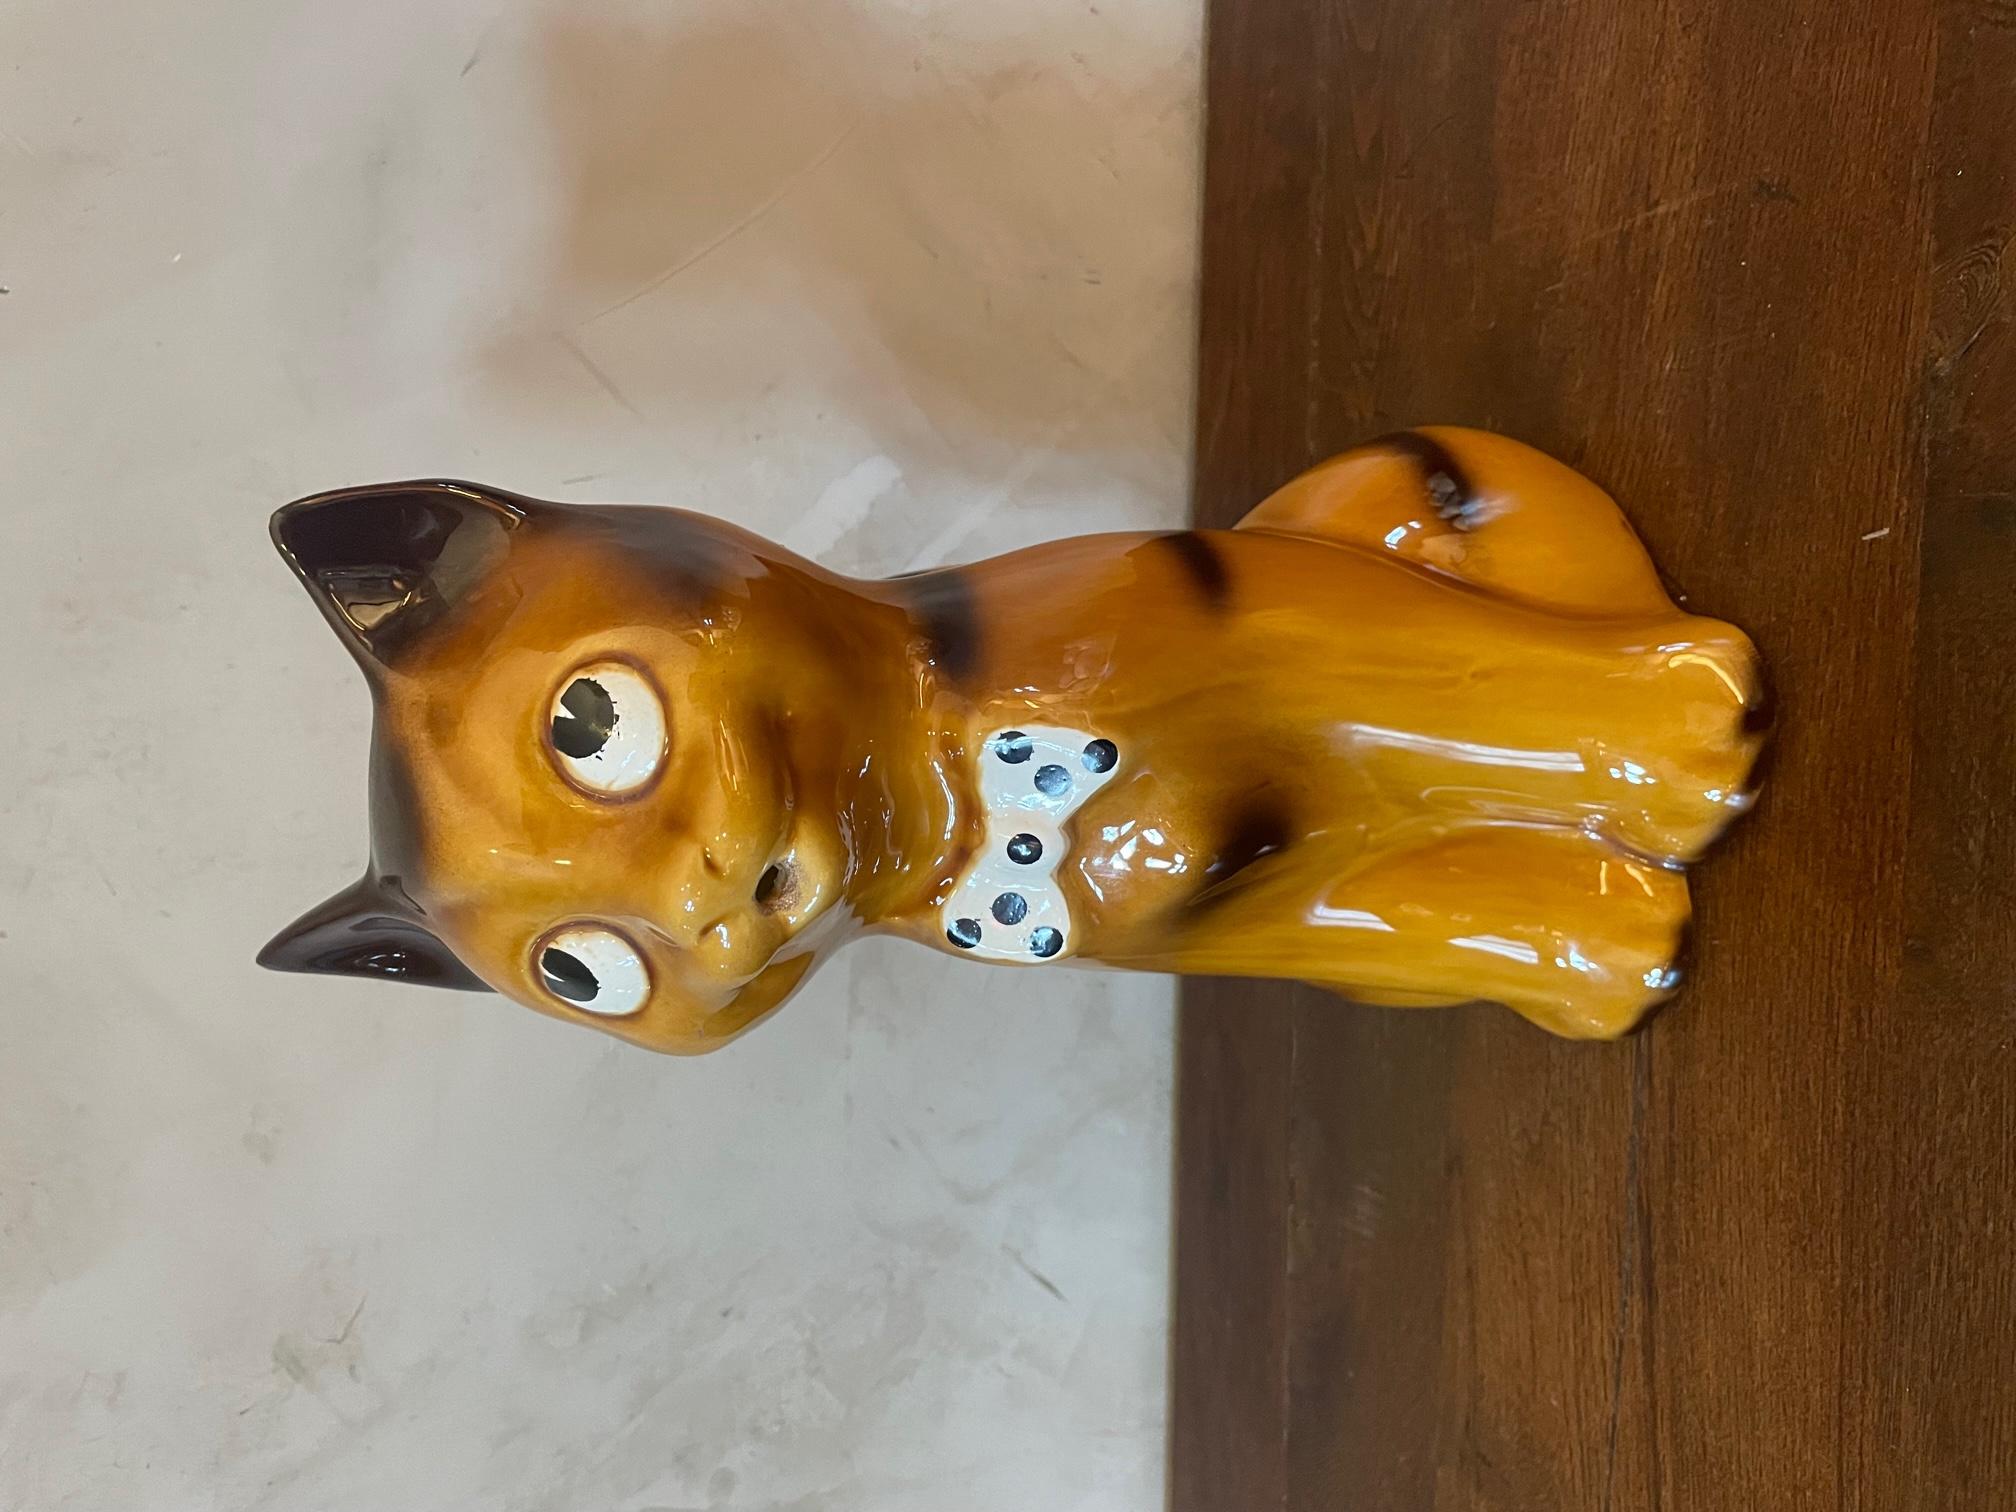 Sehr schöner Vintage-Keramikkrug mit einer Katzenform, die die Augen nach oben rollt. Große Dimension. 
(kleine Kratzer an den Ohren) Guter Allgemeinzustand.